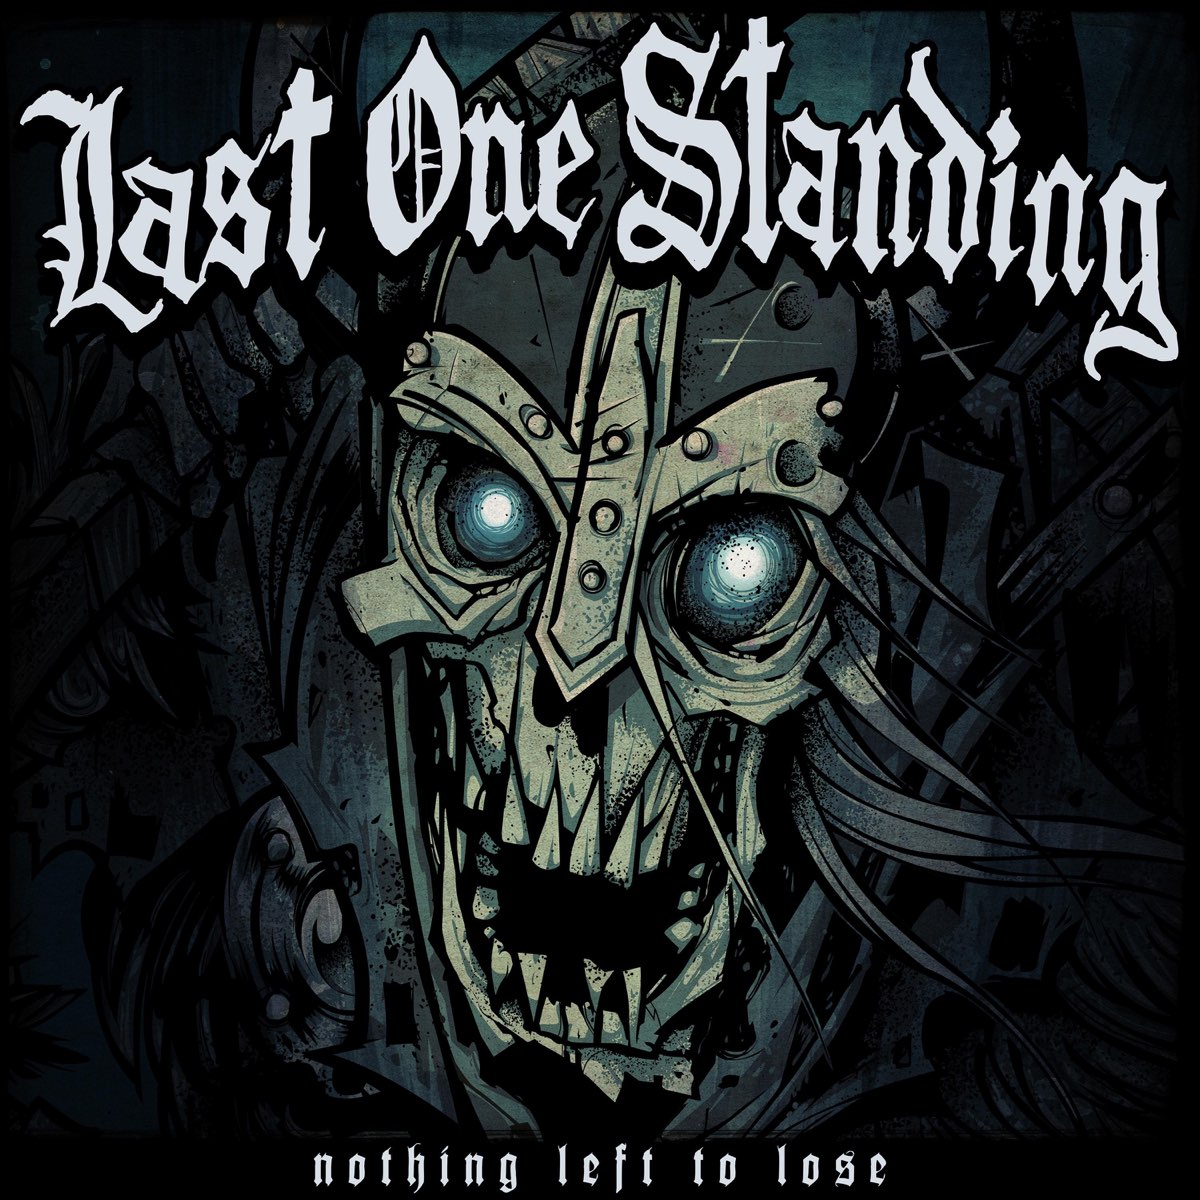 Last ones standing. Last one standing. Last one альбом. Last 1 standing. The last one ones.